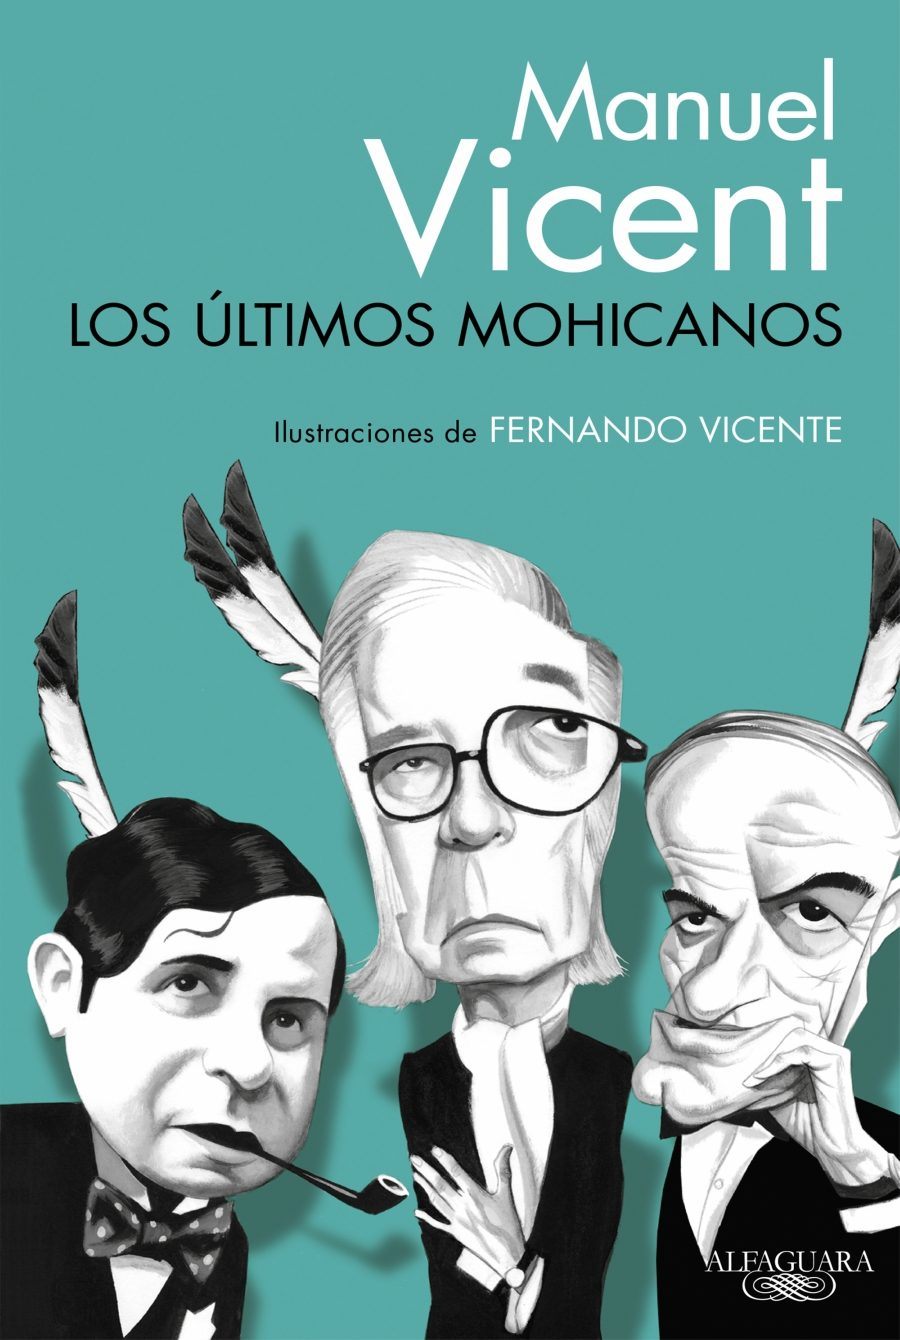 'Los últimos mohicanos'. Manuel Vicent.